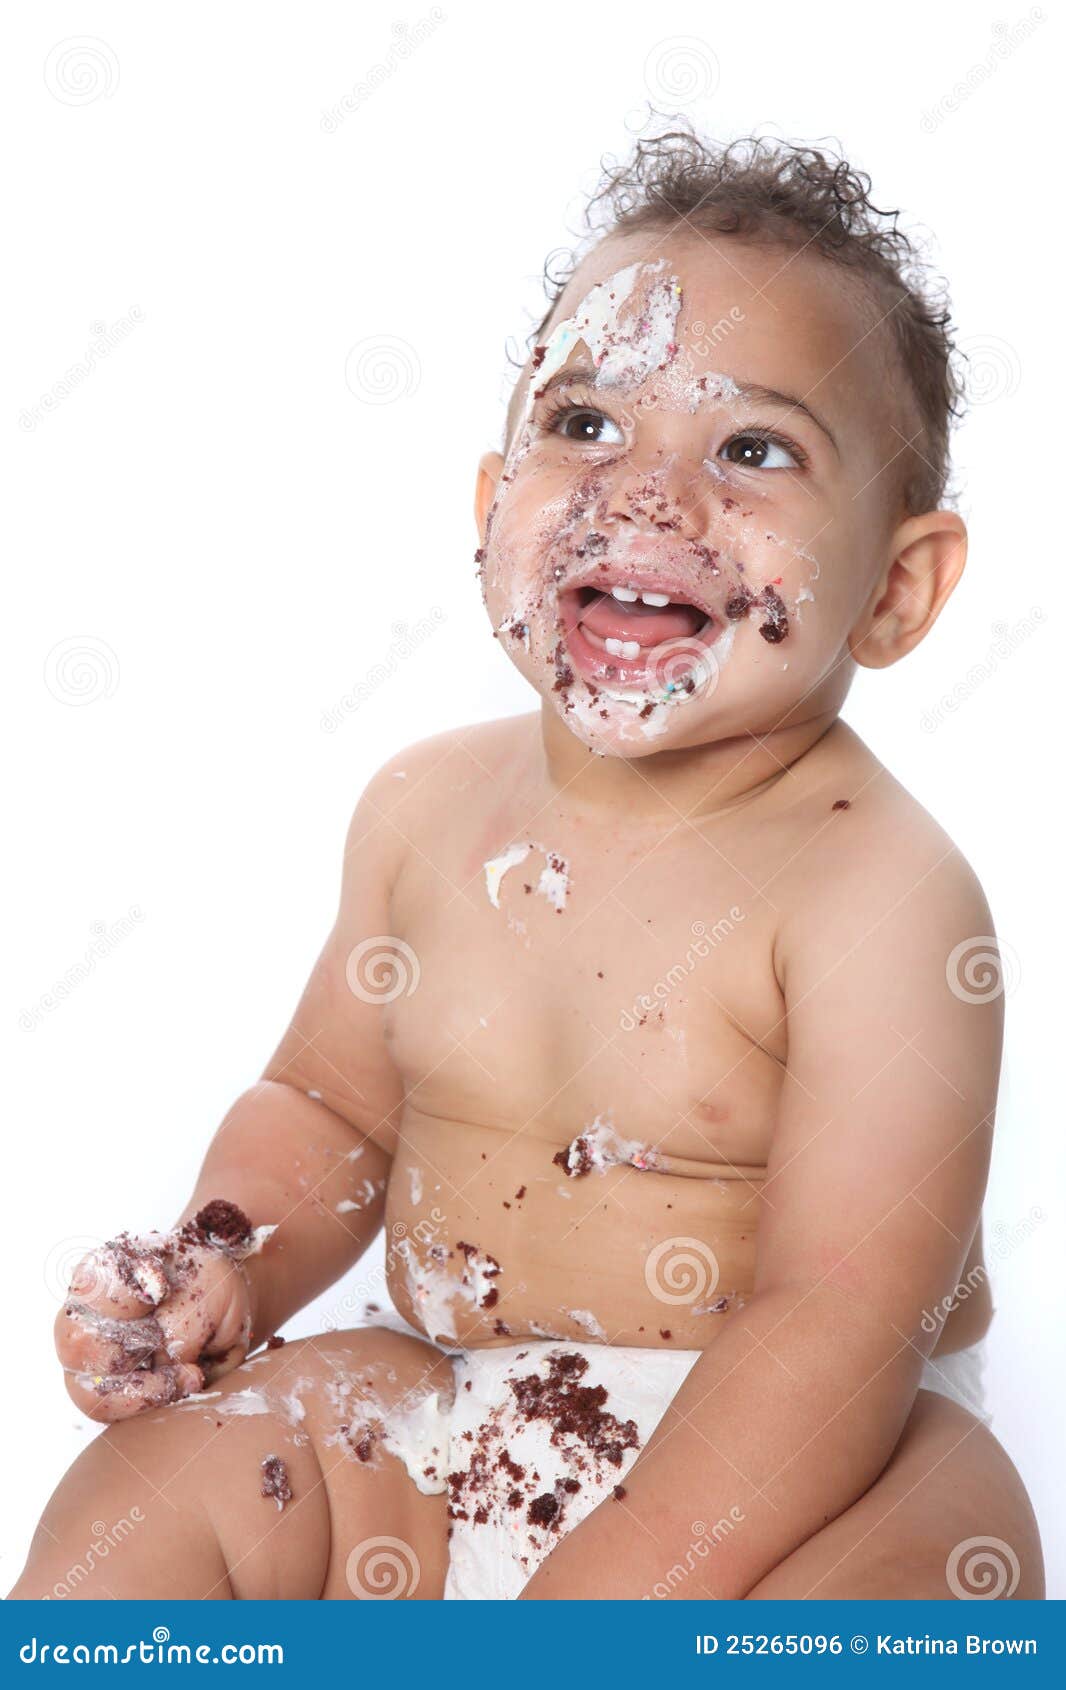 Boy Eating Cake stock image. Image of youth